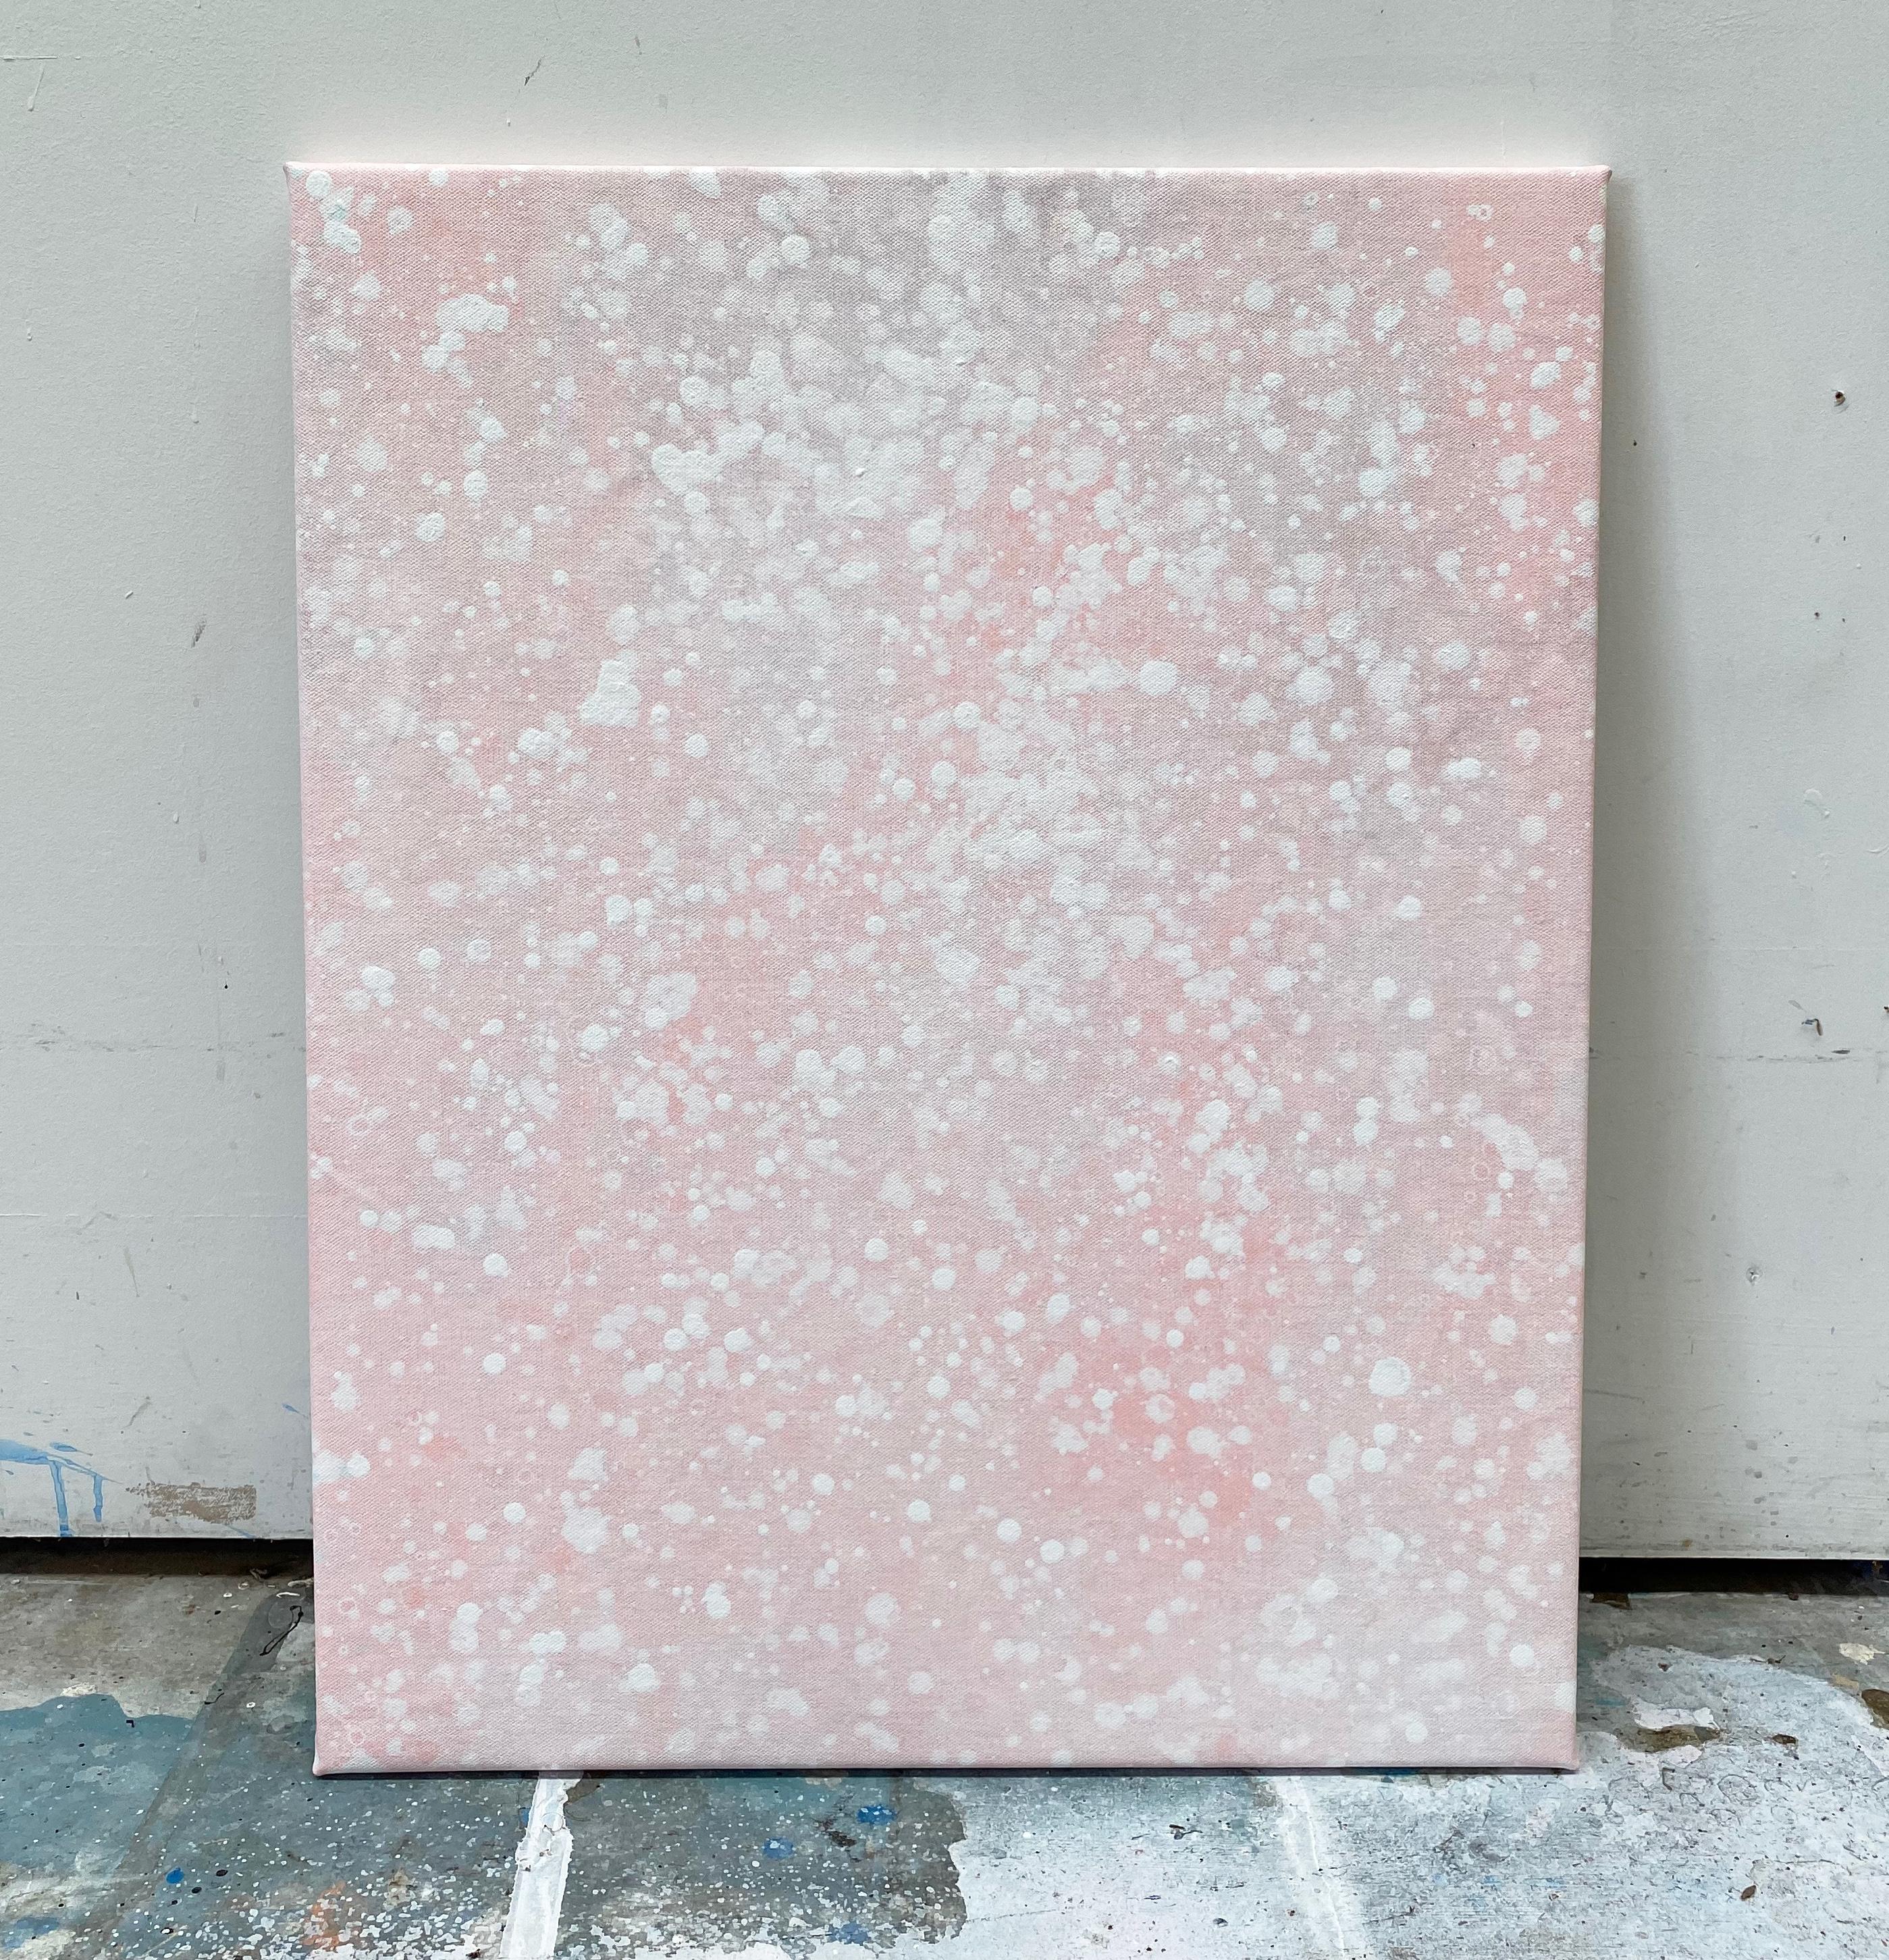 Seine Schneewittchen-Pastell hellrosa Punkt abstrakte minimalistische expressionistische moderne Malerei – Painting von Kathleen Rhee